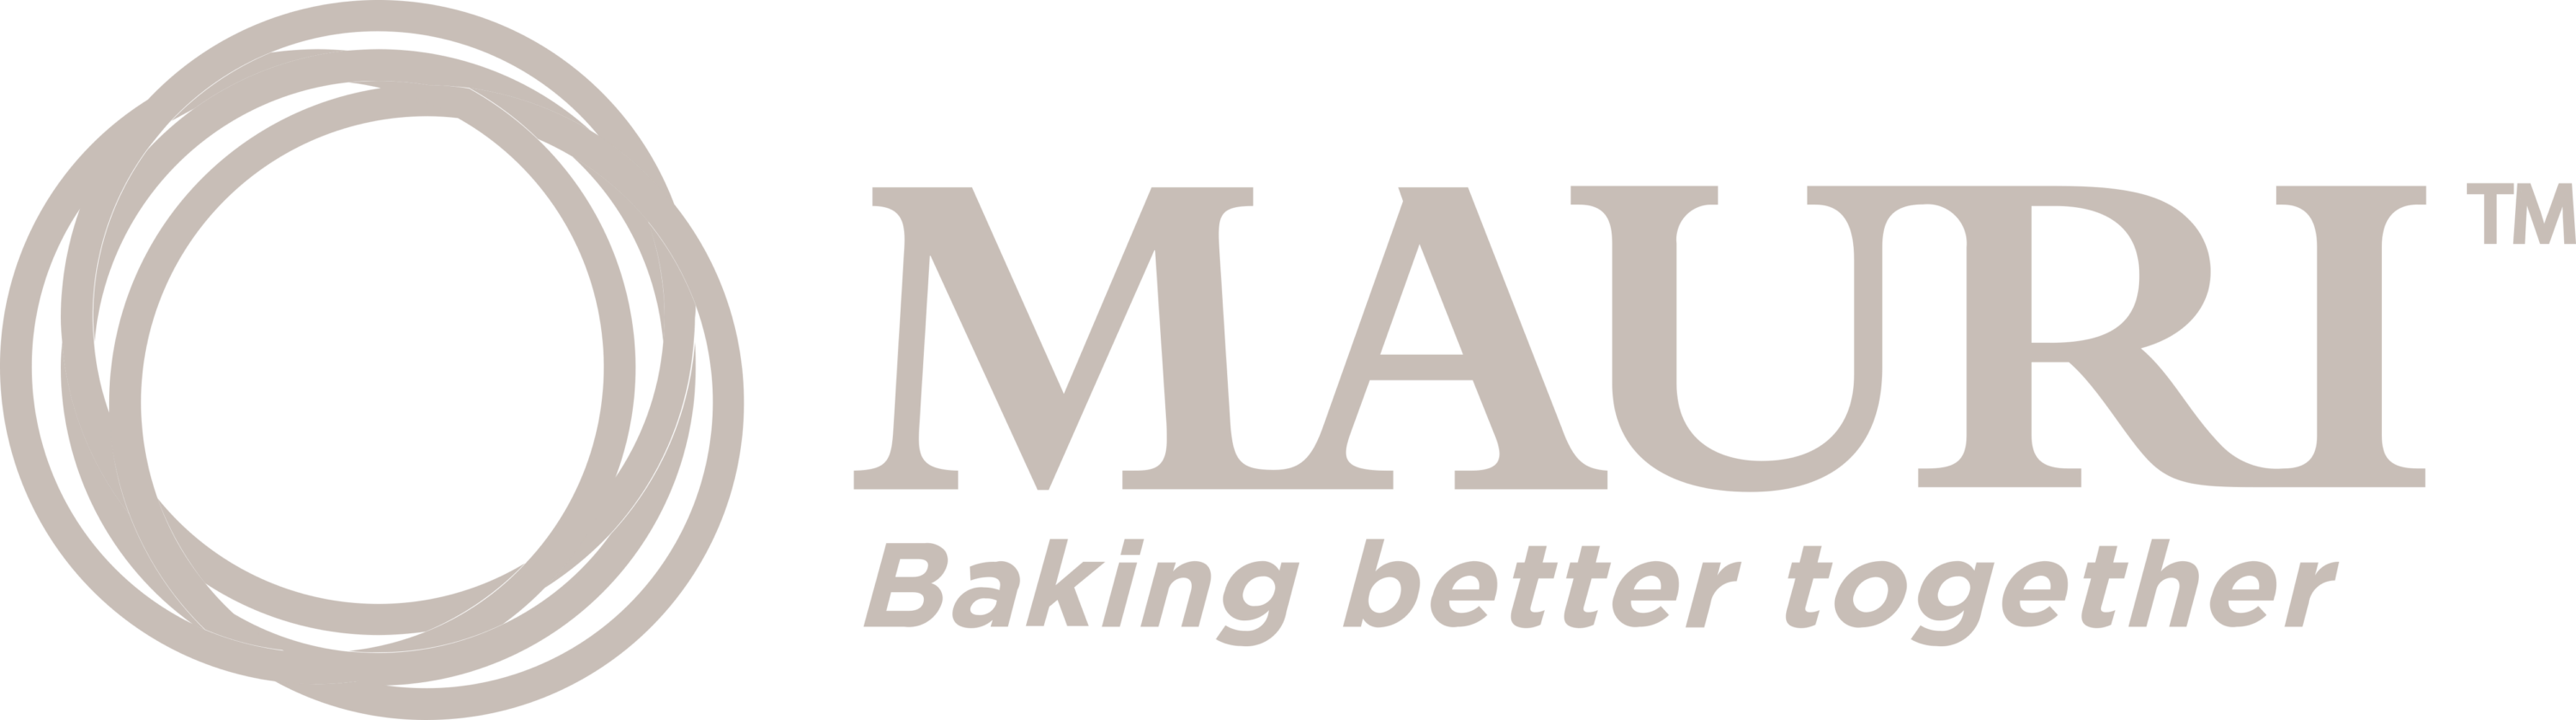 Mauri Logo